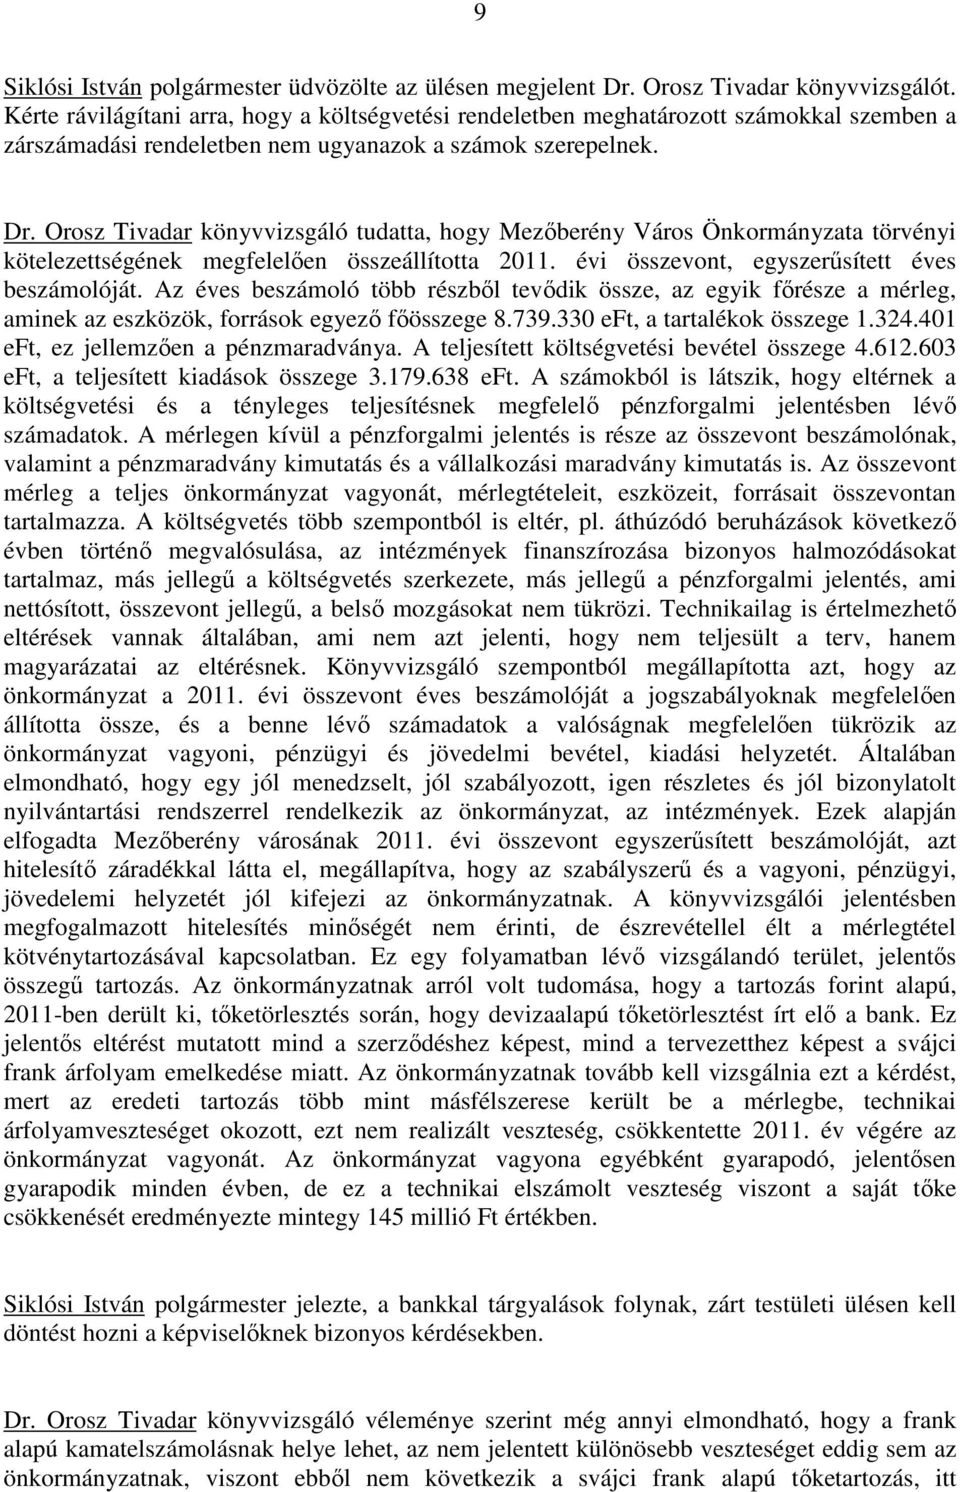 Orosz Tivadar könyvvizsgáló tudatta, hogy Mezıberény Város Önkormányzata törvényi kötelezettségének megfelelıen összeállította 2011. évi összevont, egyszerősített éves beszámolóját.